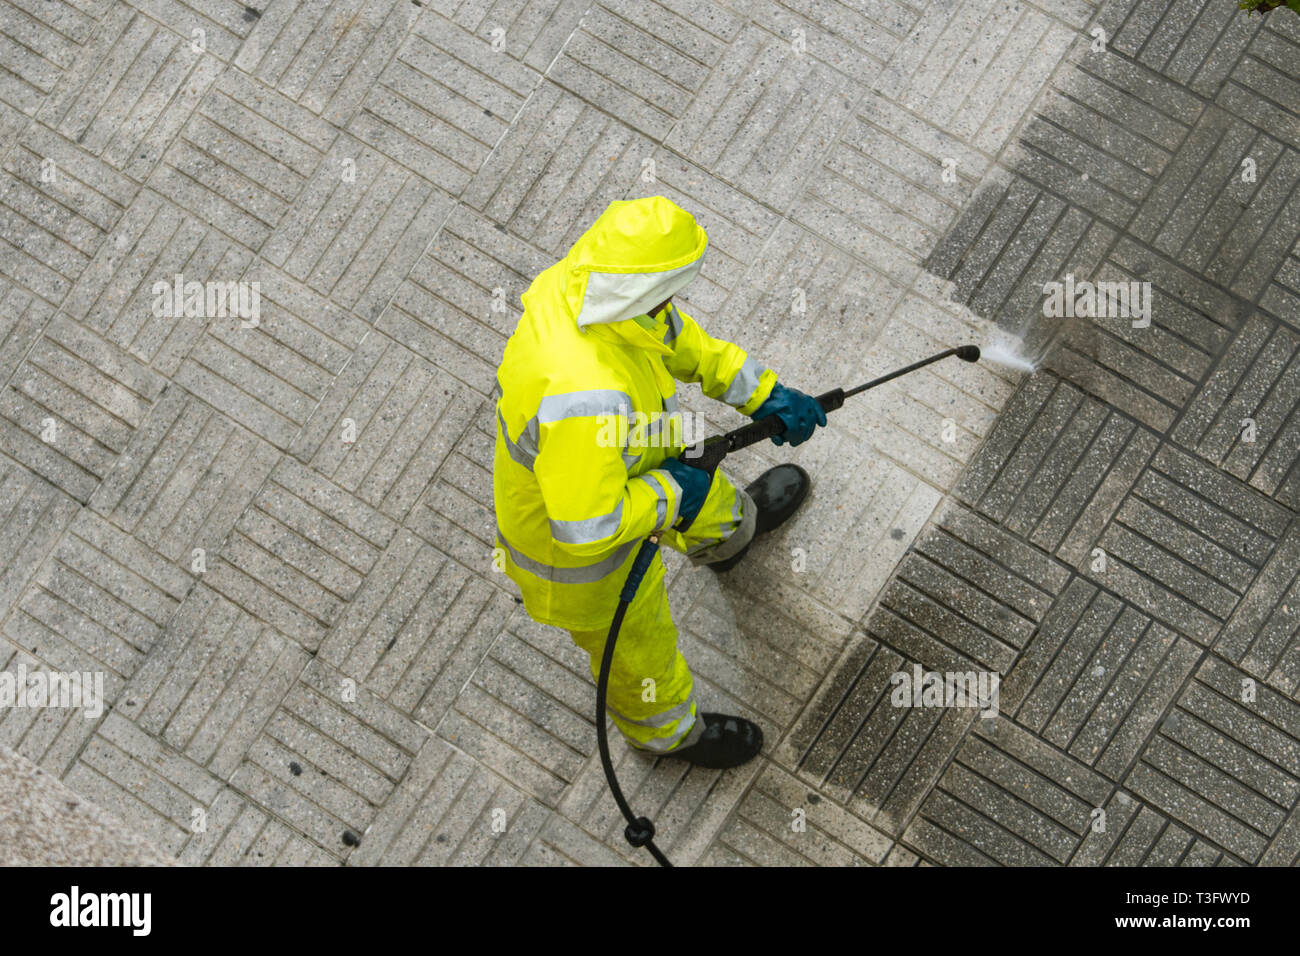 Vista superior de un trabajador de la limpieza de la acera de la calle con el chorro de agua de alta presión. Concepto de mantenimiento público Foto de stock